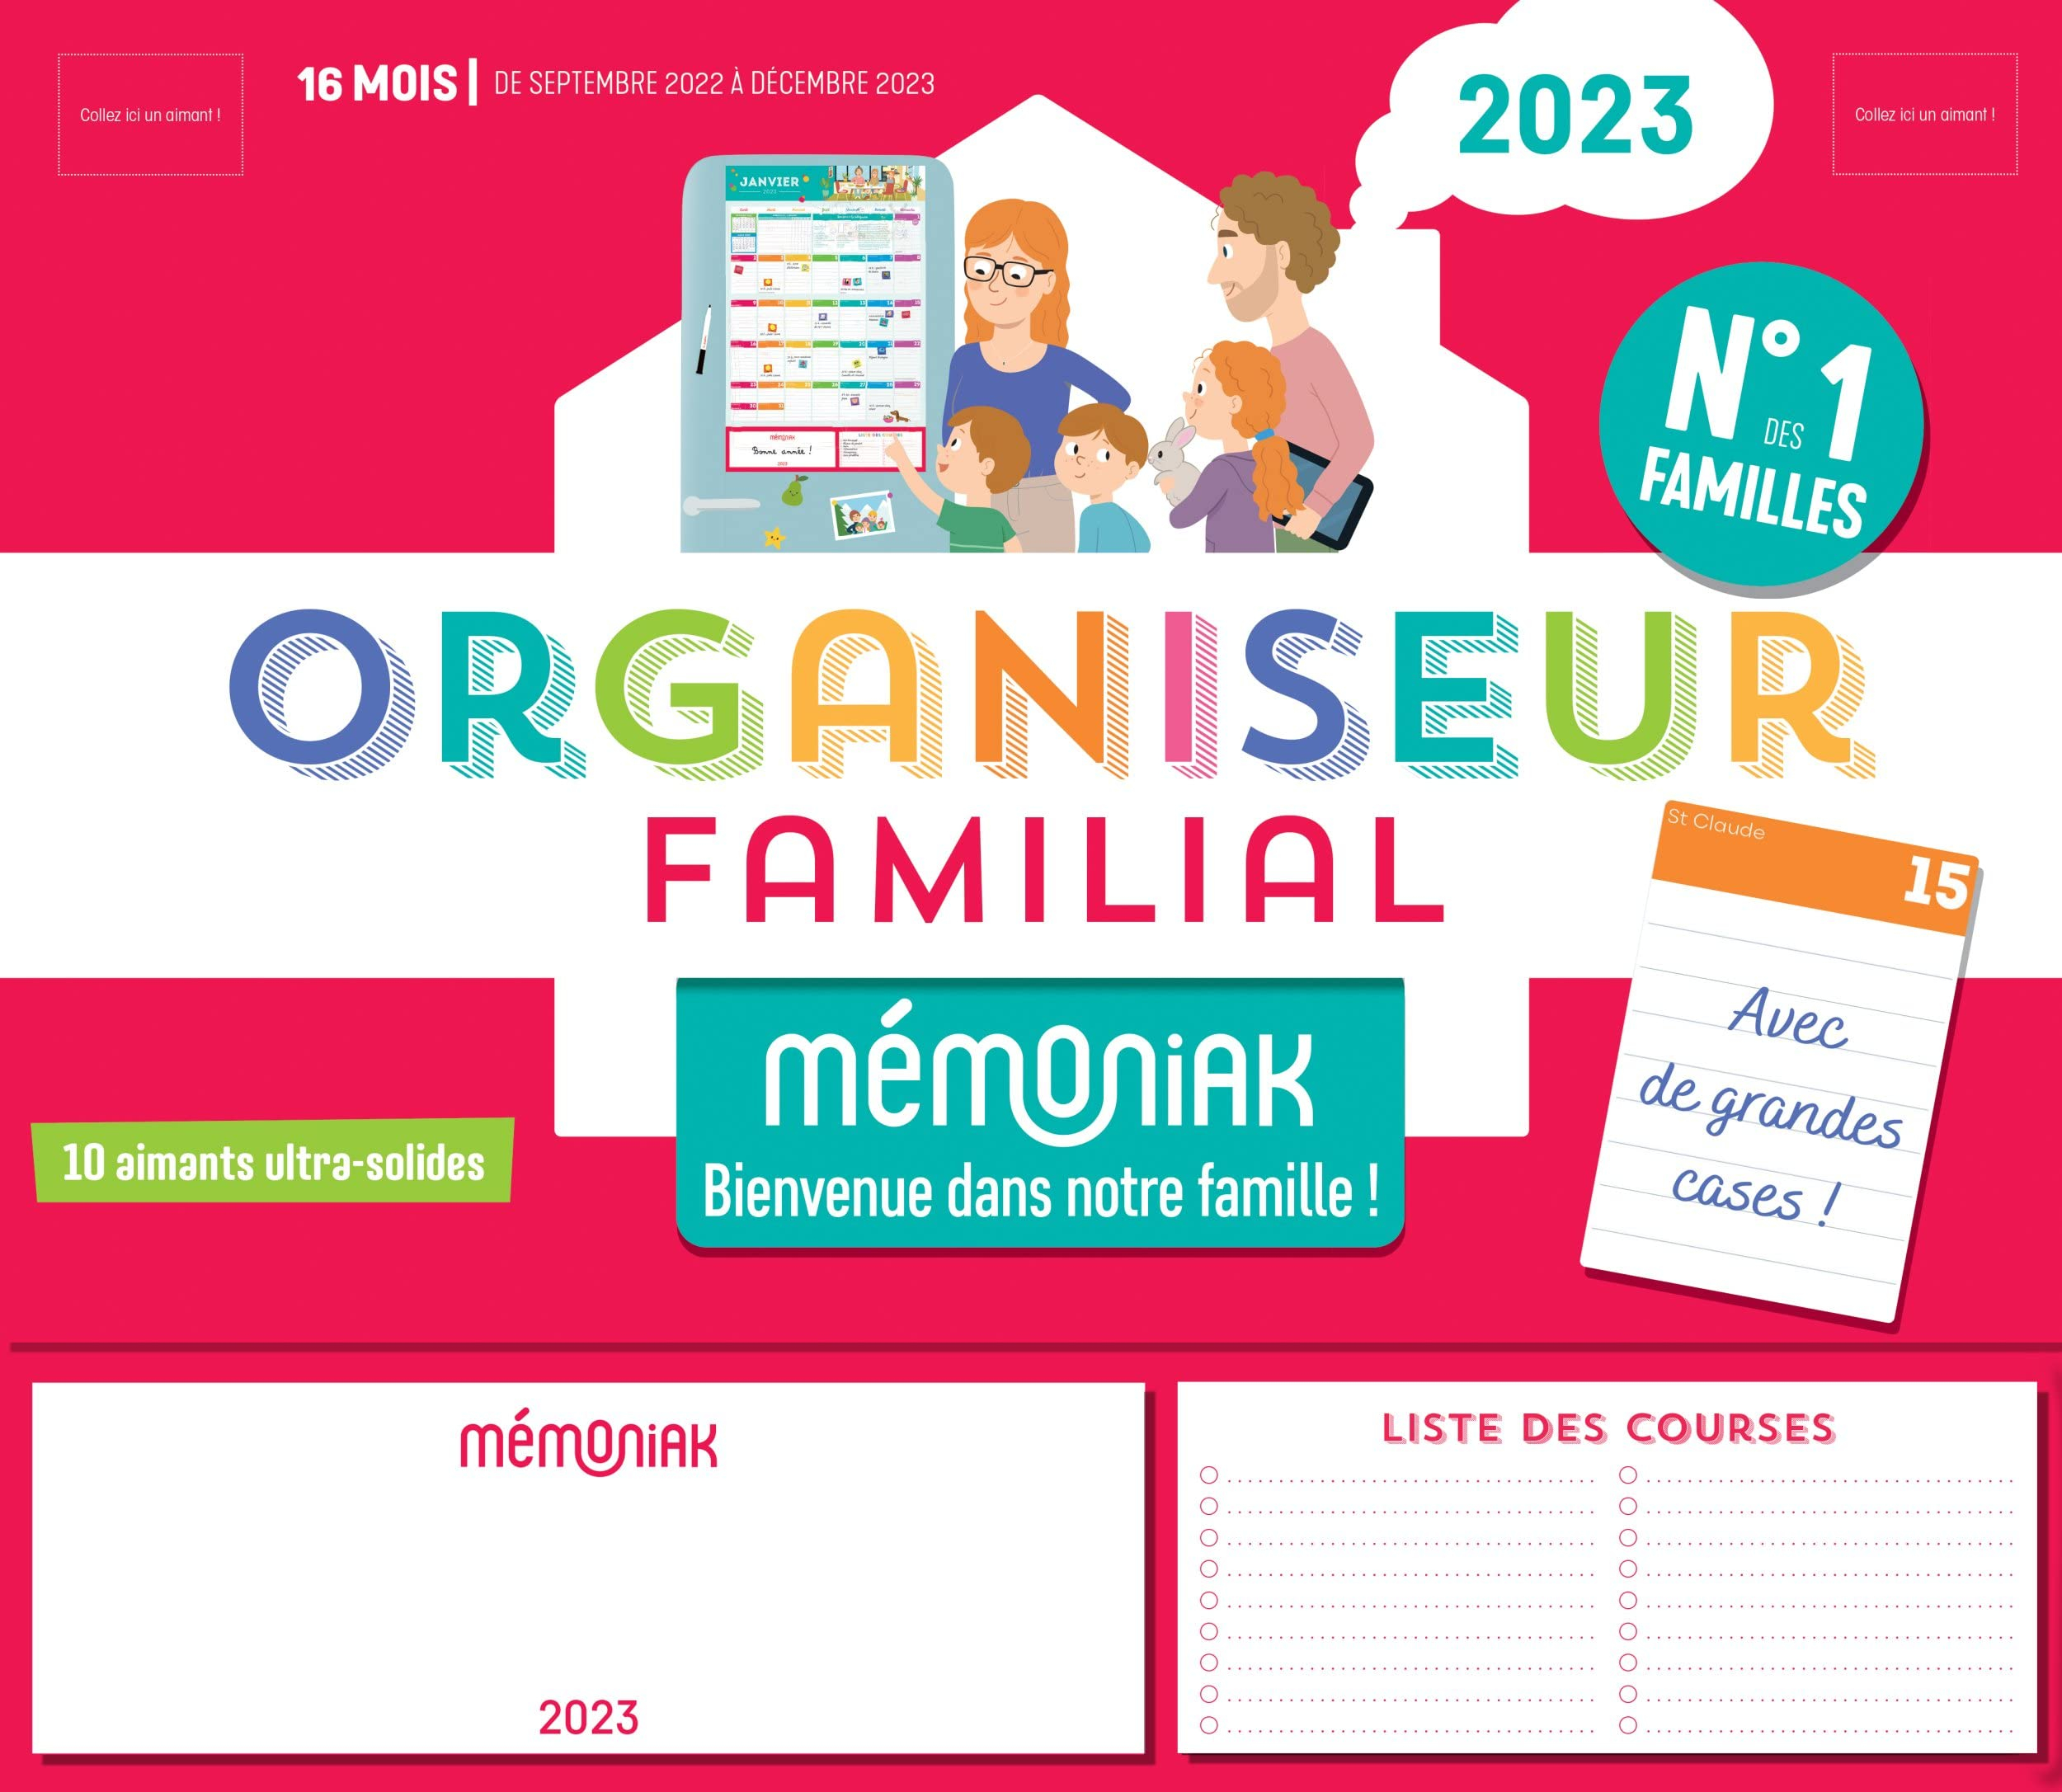 Organiseur familial Mémoniak 2023 : 16 mois, de septembre 2022 à décembre 2023